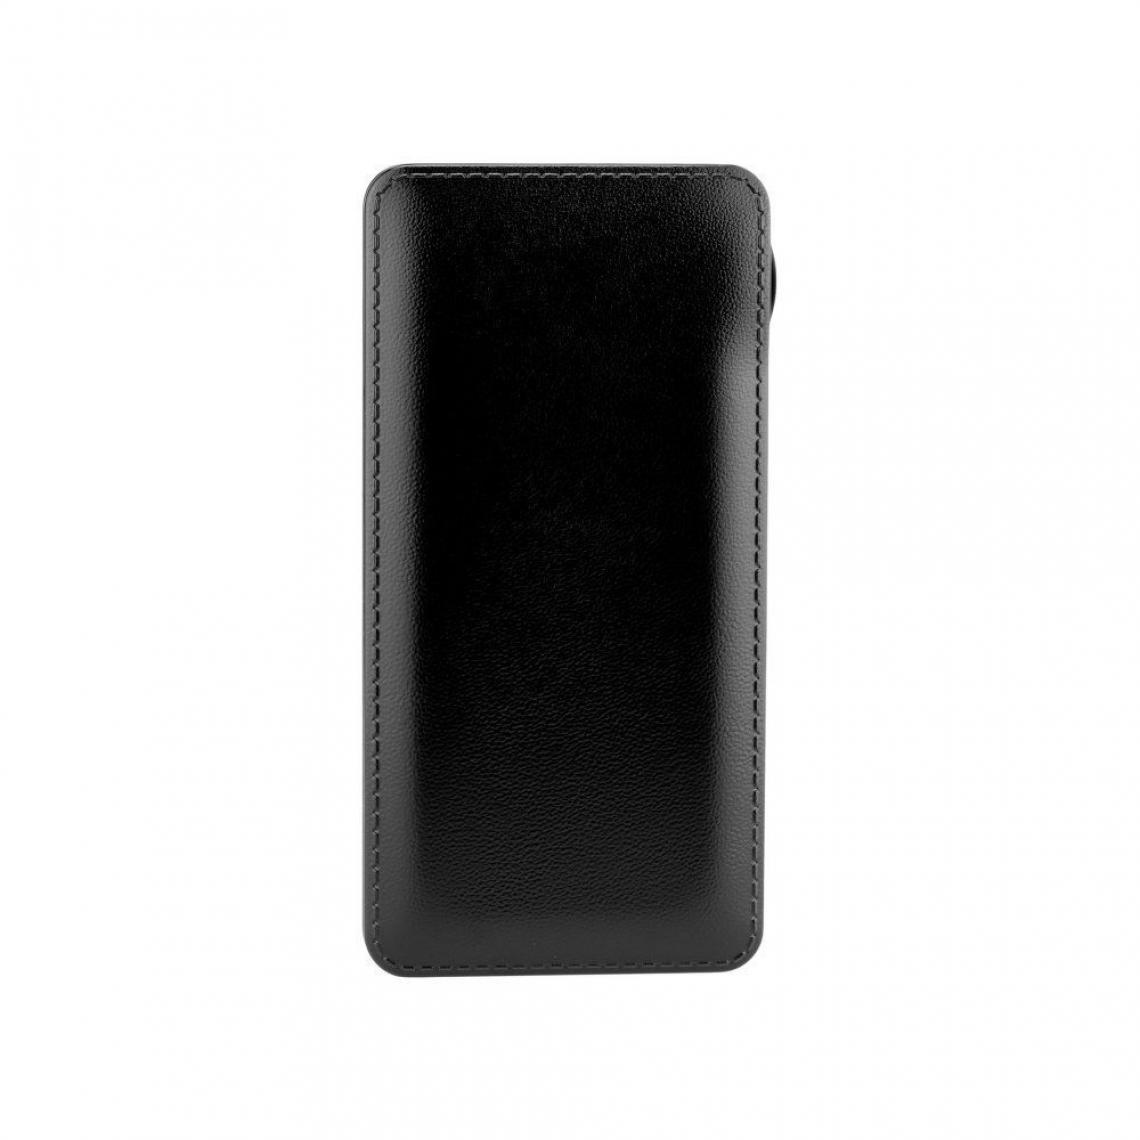 Ozzzo - Chargeur batterie externe 10000mAh powerbank ozzzo noir pour UMiDIGI A7 - Autres accessoires smartphone